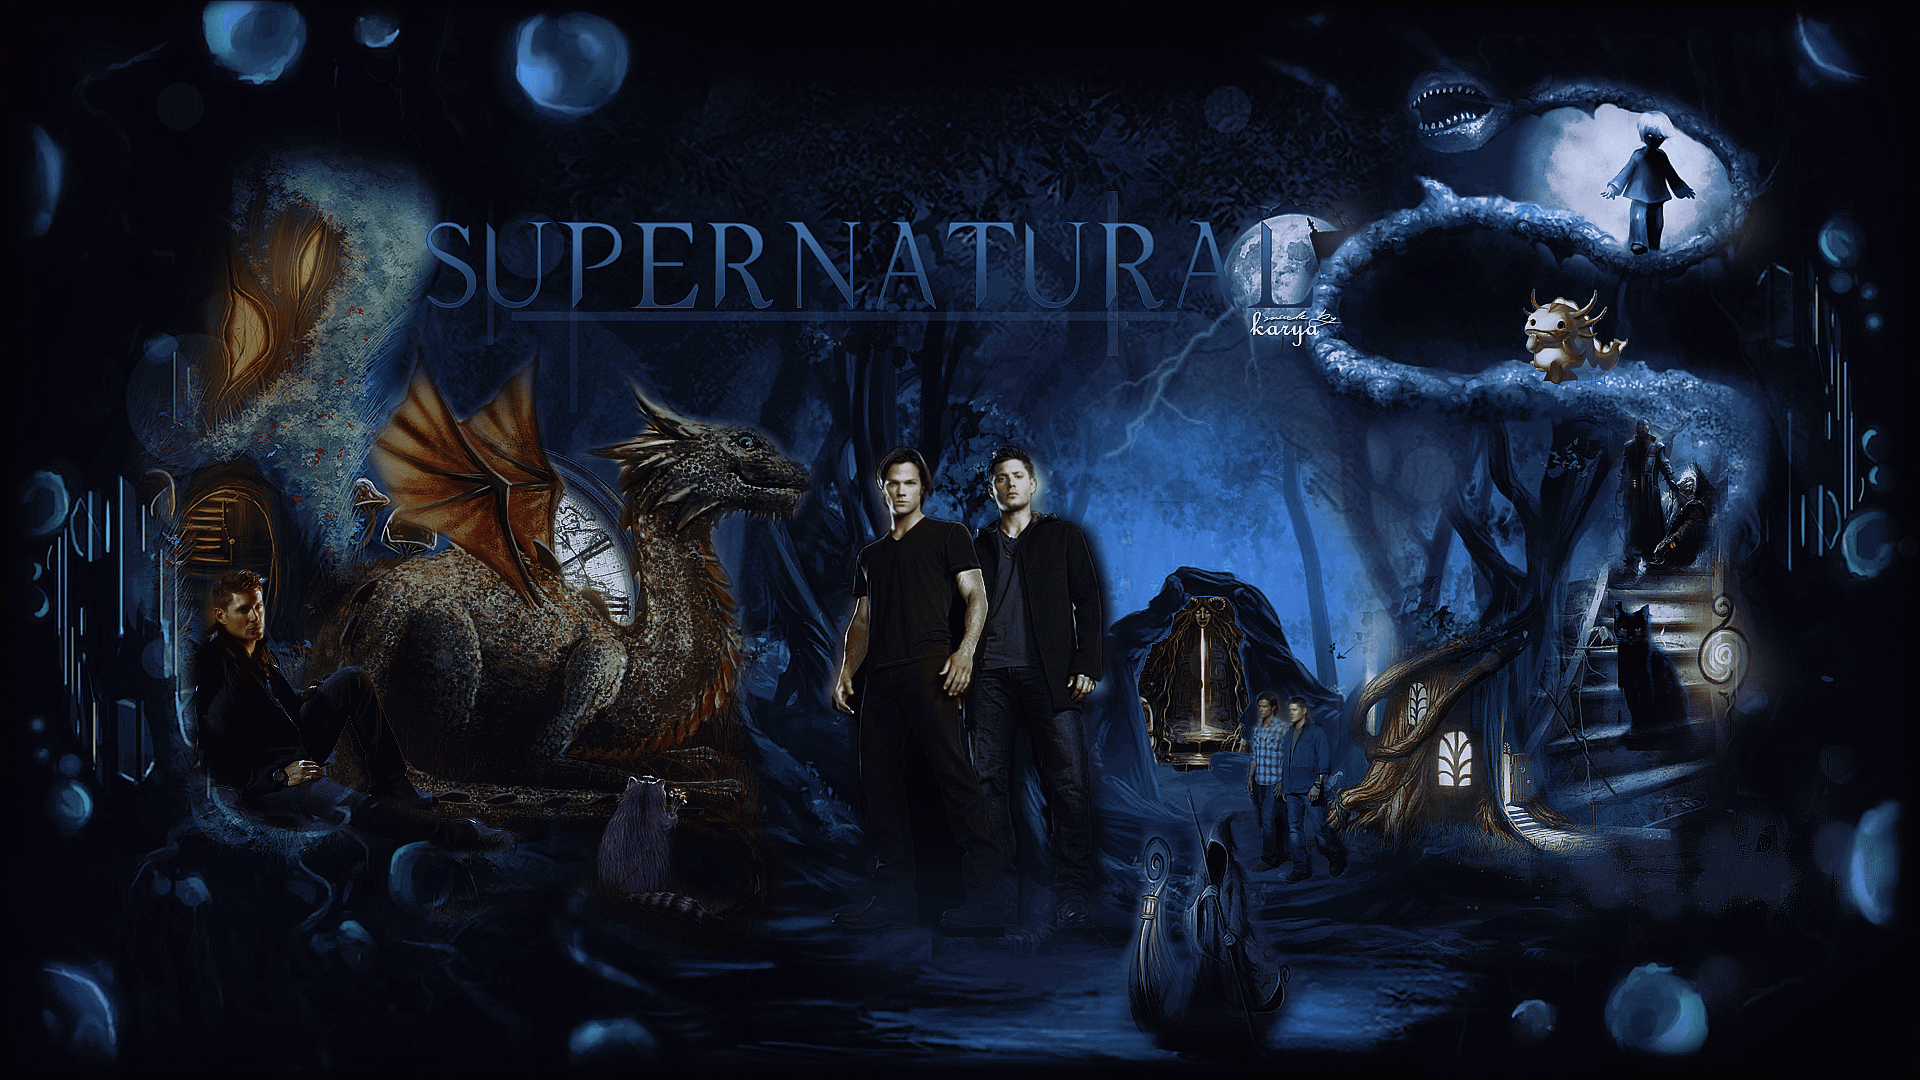 Supernatural Background. Wallpaper, Background, Image, Art